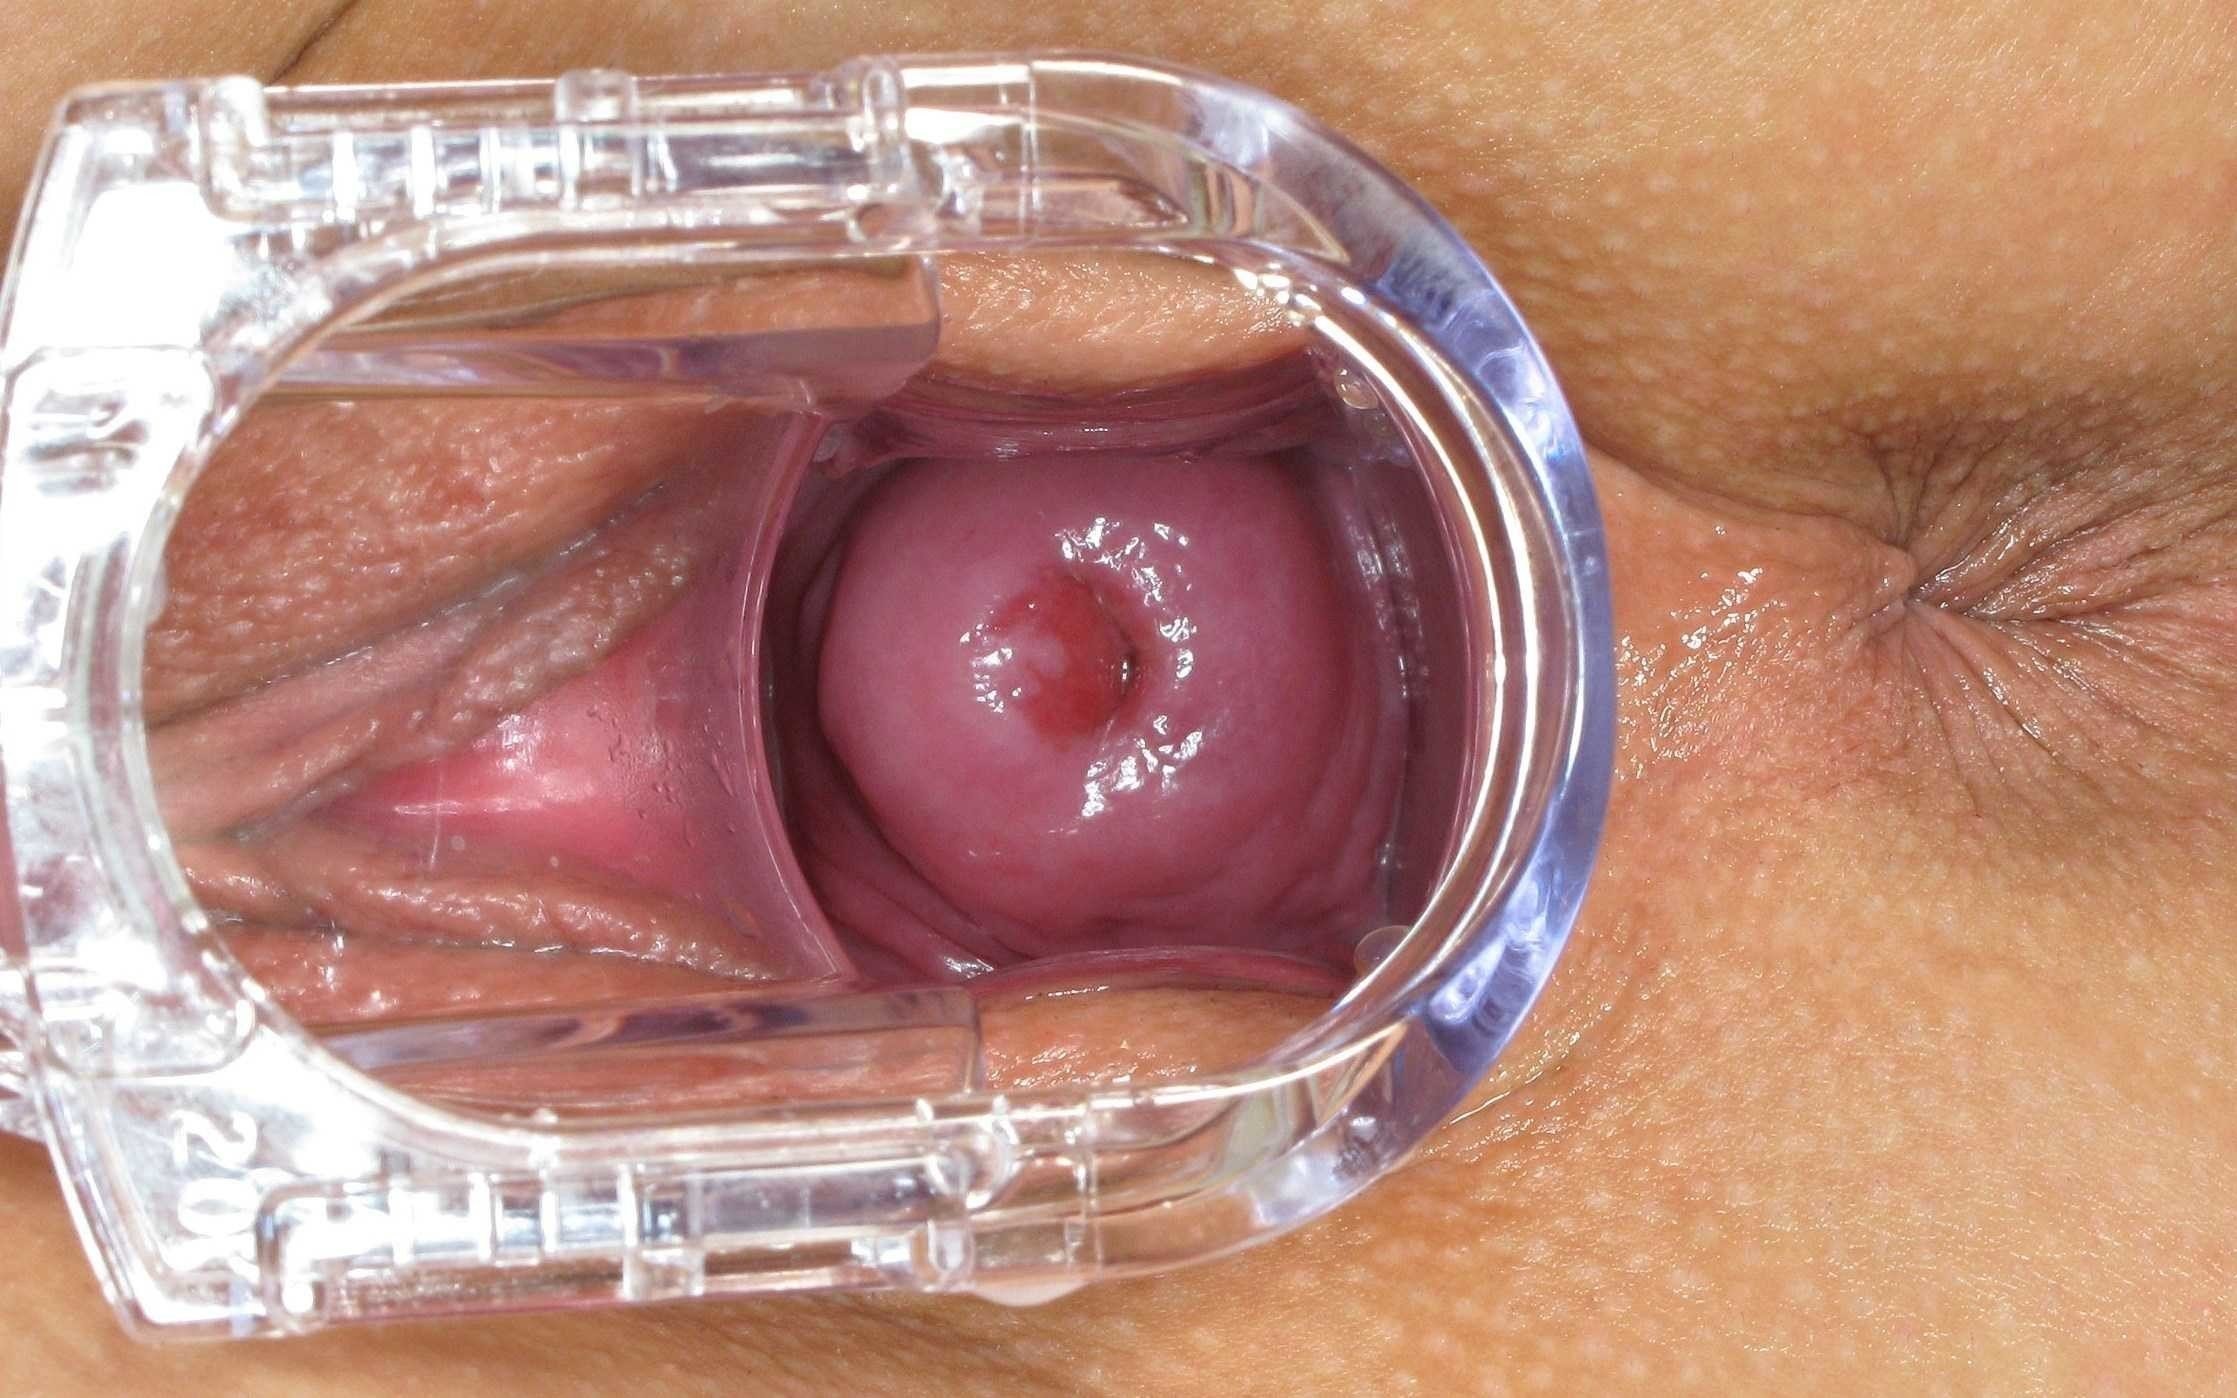 Camera inside vagina teen